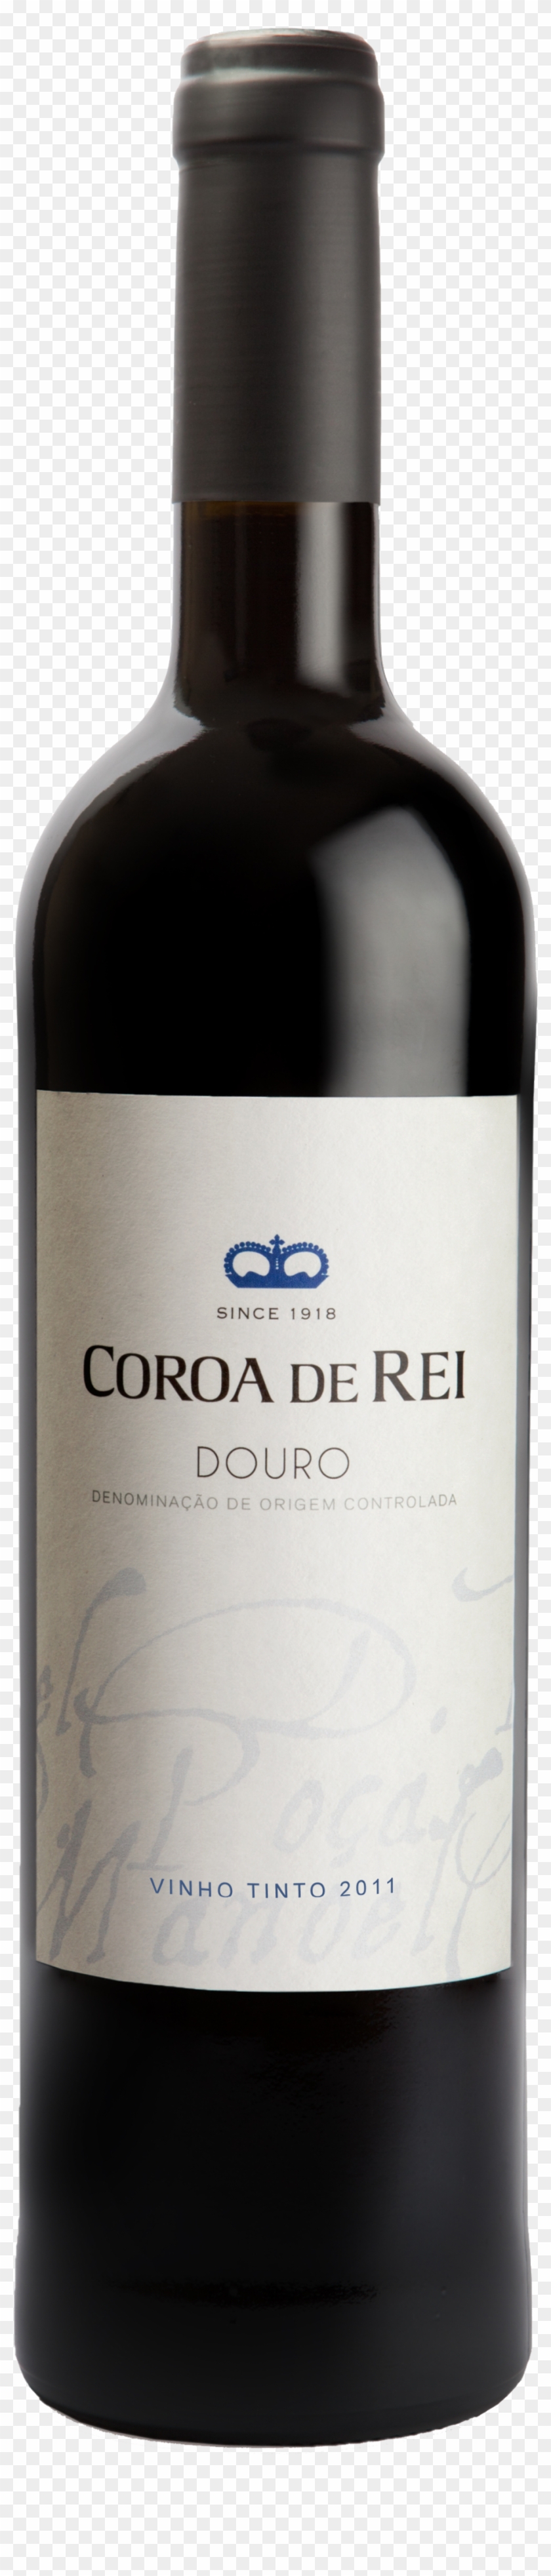 Coroa De Rei Tinto Douro - Tenuta Dell Ornellaia Ornellaia 2013 Clipart #820253